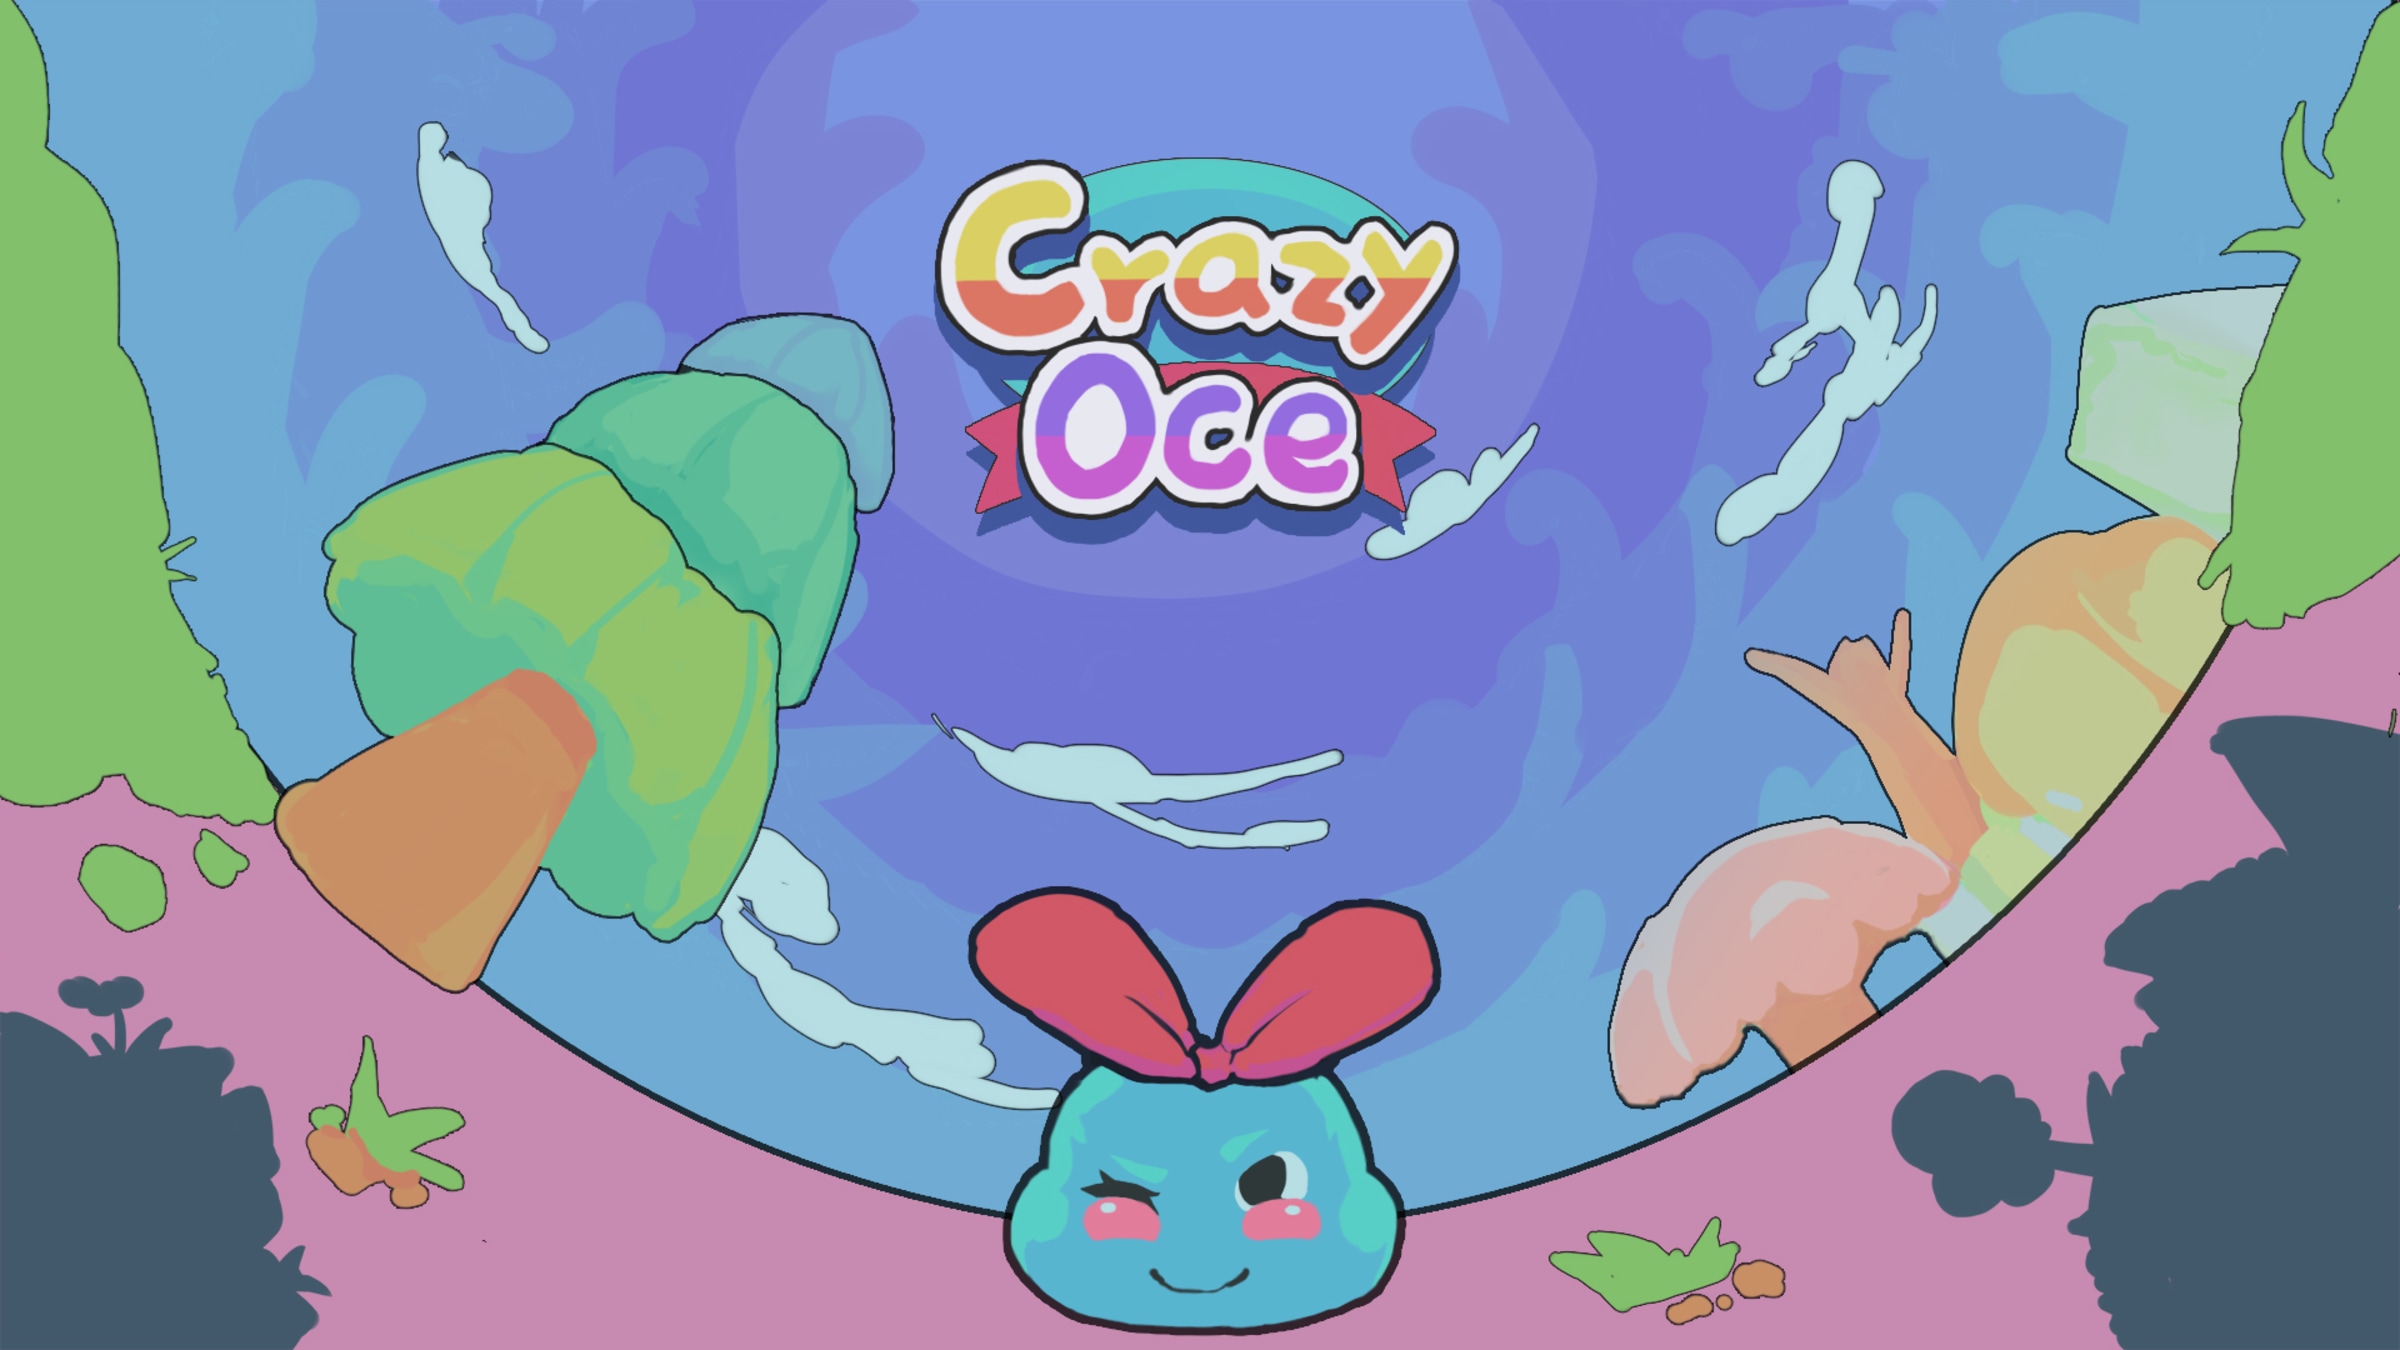 Crazy Oce for Nintendo Switch - Nintendo Official Site